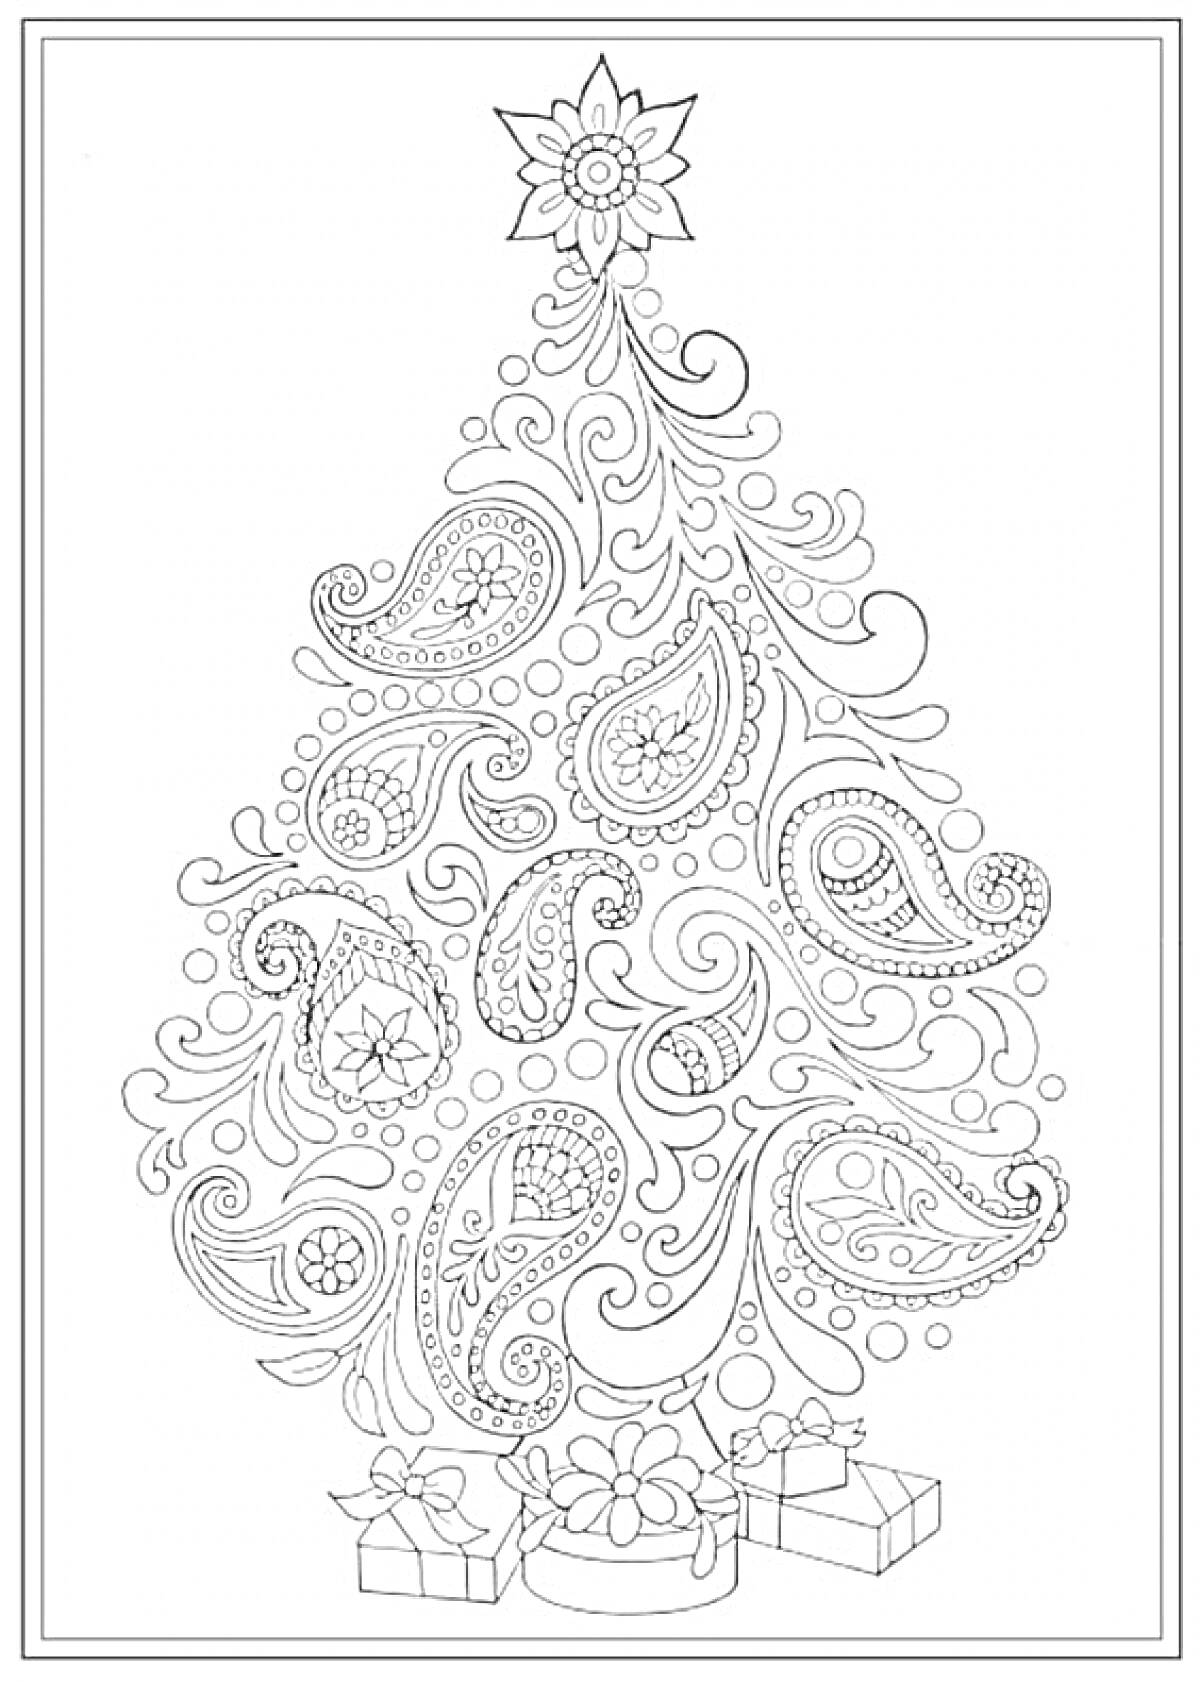 Раскраска Новогодняя ёлка с узорами, подарками и звездой на вершине